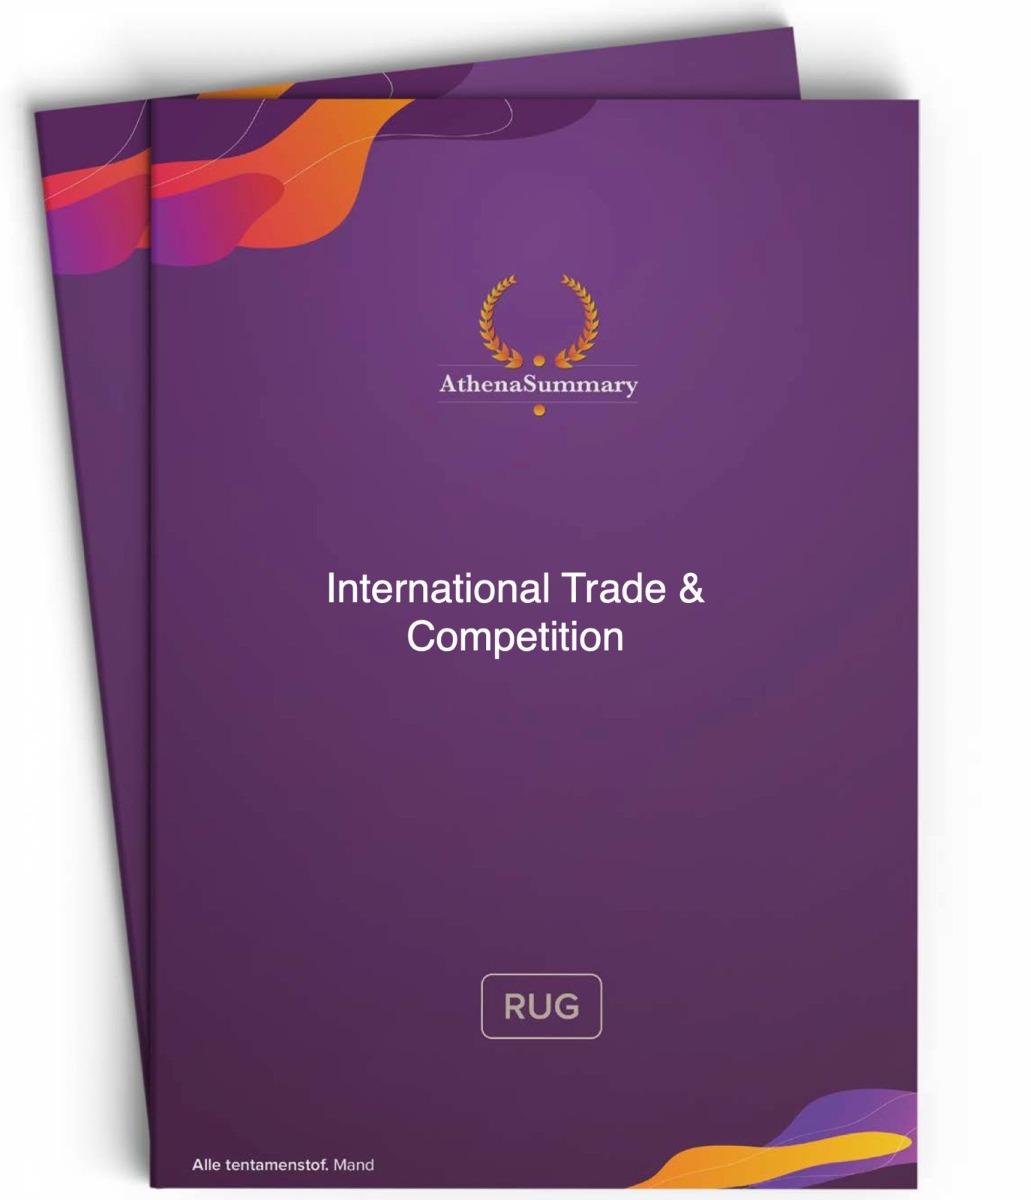 Literature Summary - International Trade & Competition